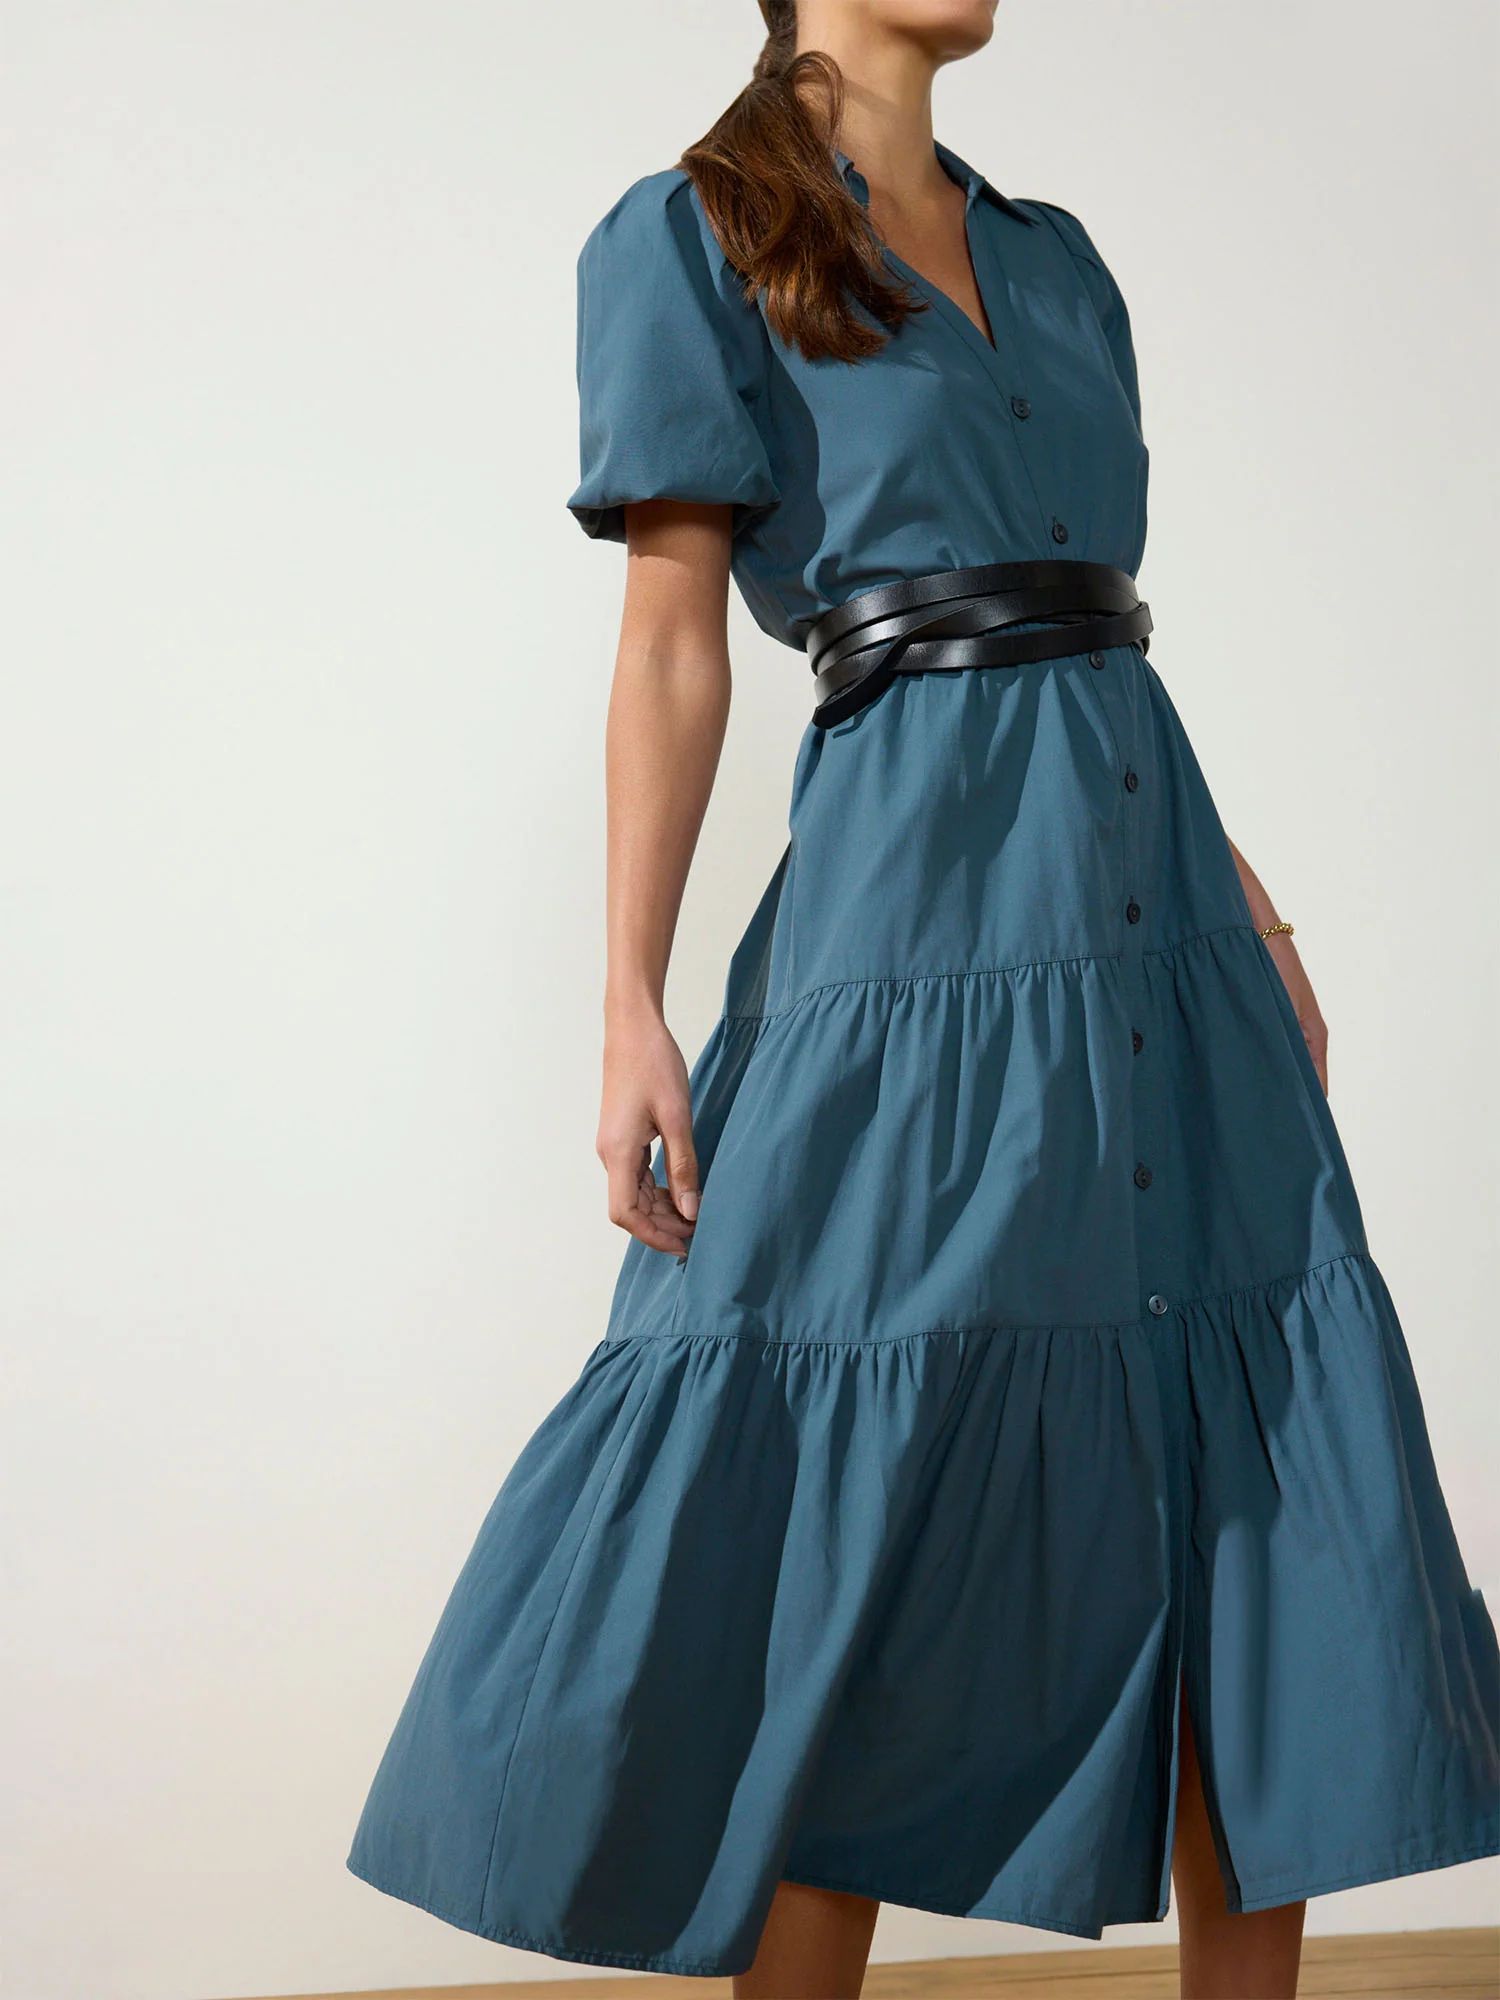 Brochu Walker | Women's Havana Dress in Ocean Blue | Brochu Walker